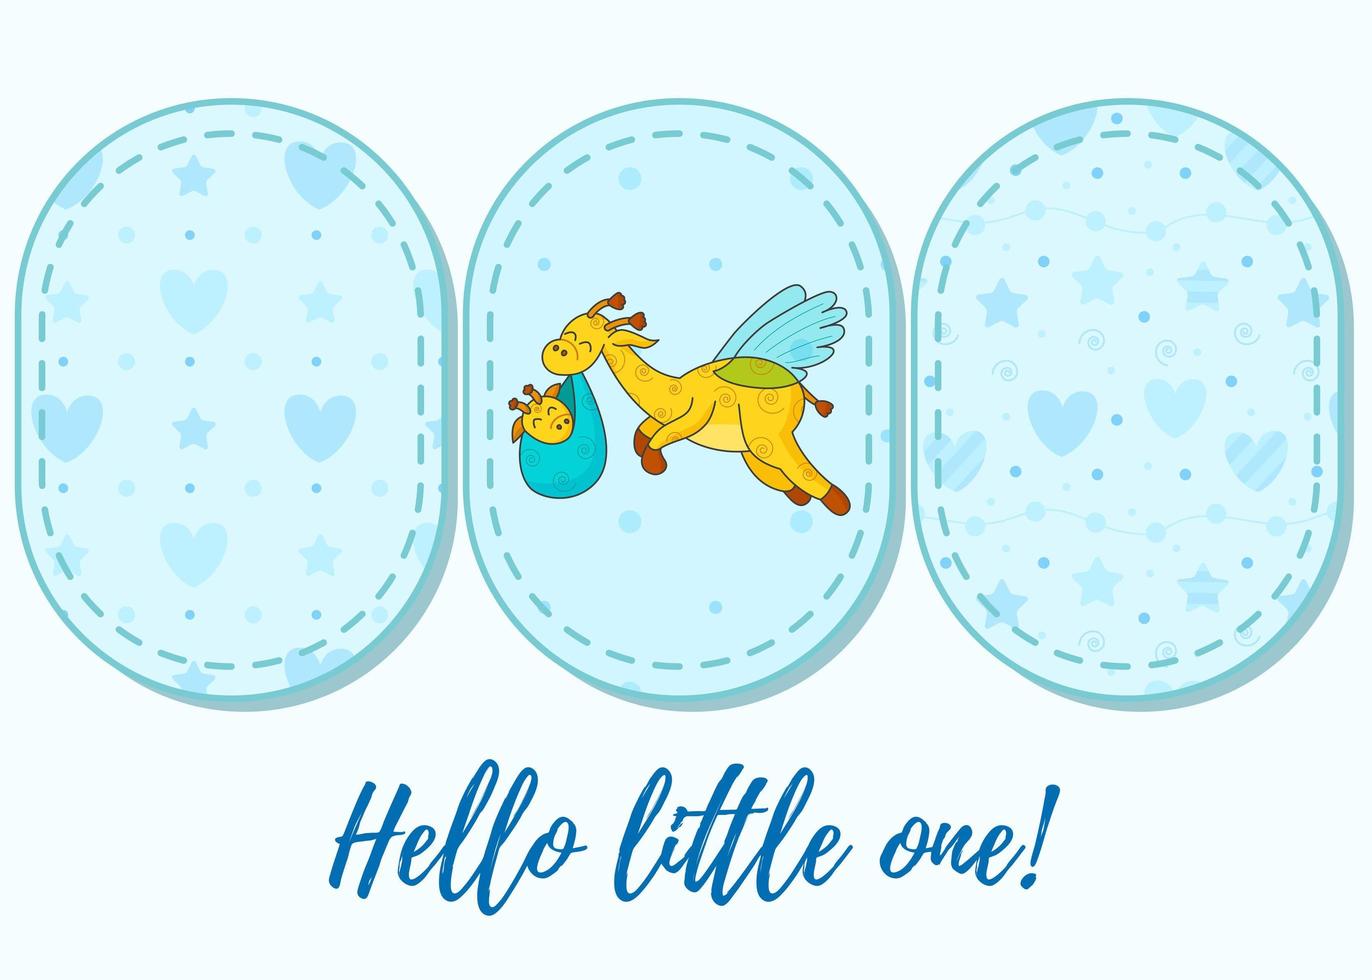 conjunto de 3 patrones y letras. una postal para un recién nacido. jirafa voladora divertida. Hola bebé. felicitaciones por el nacimiento de un niño. certificado de nacimiento. Hola Mundo. vector